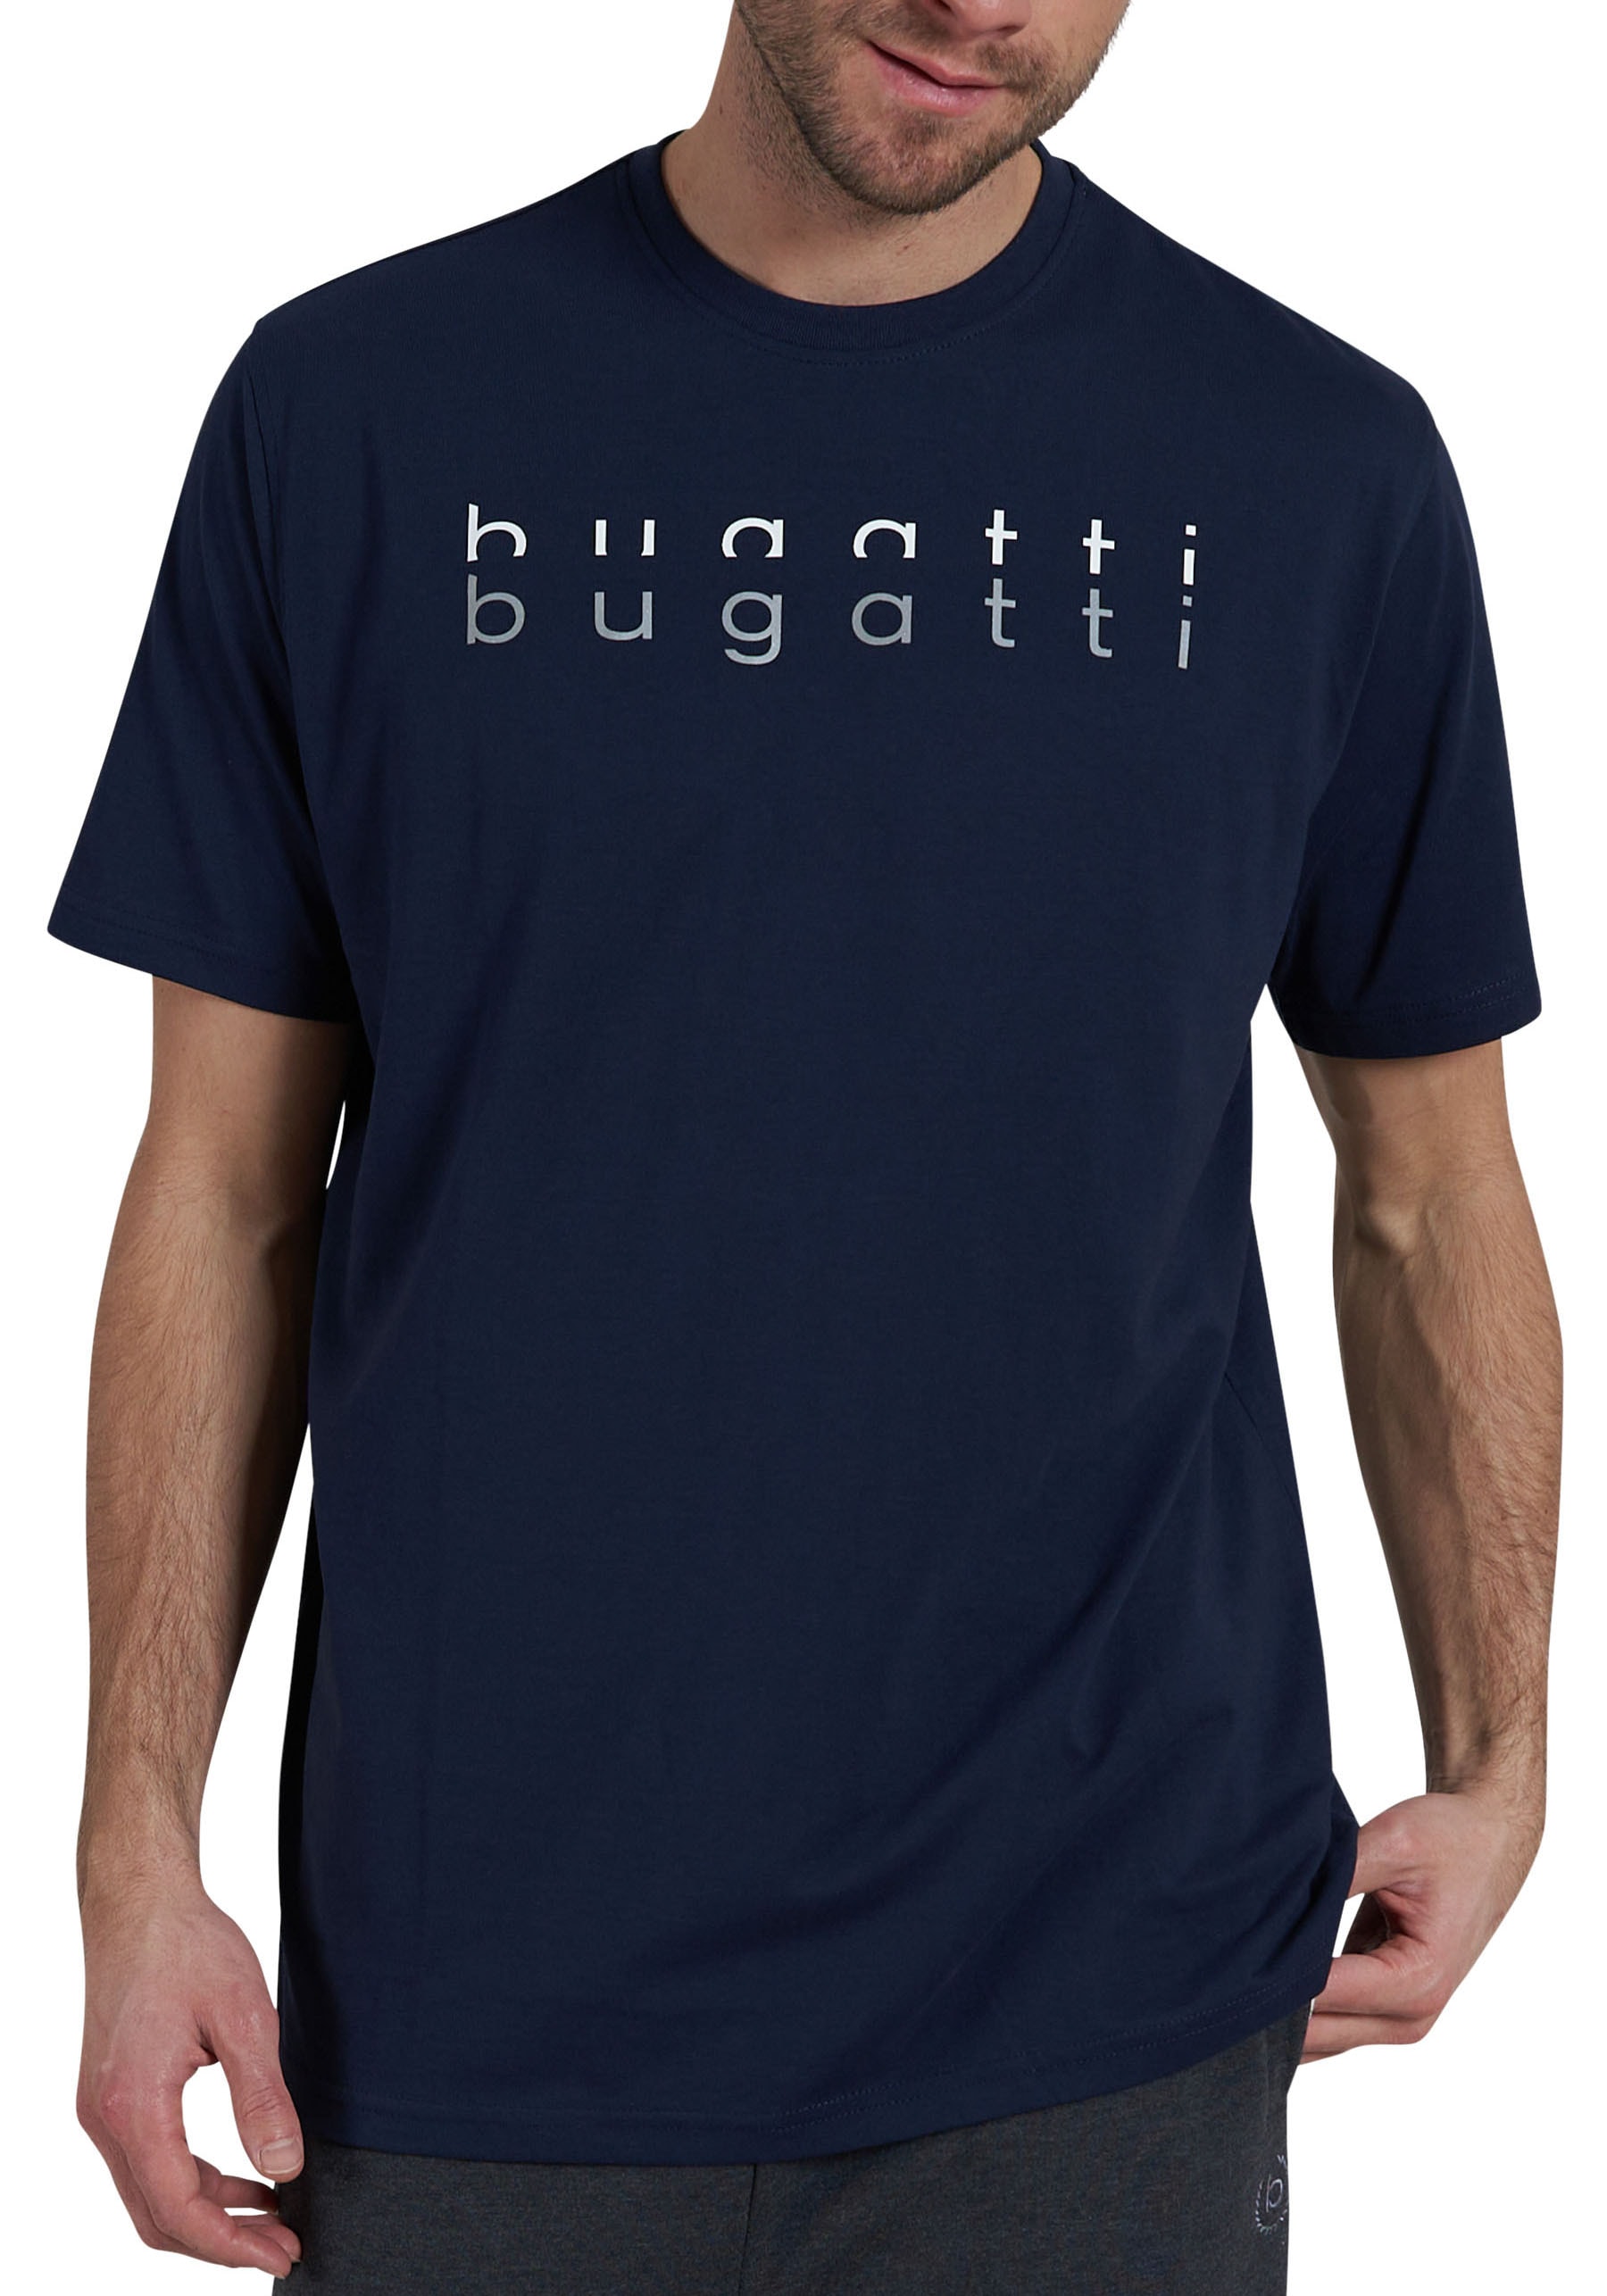 bugatti T-Shirt, für jeden Tag